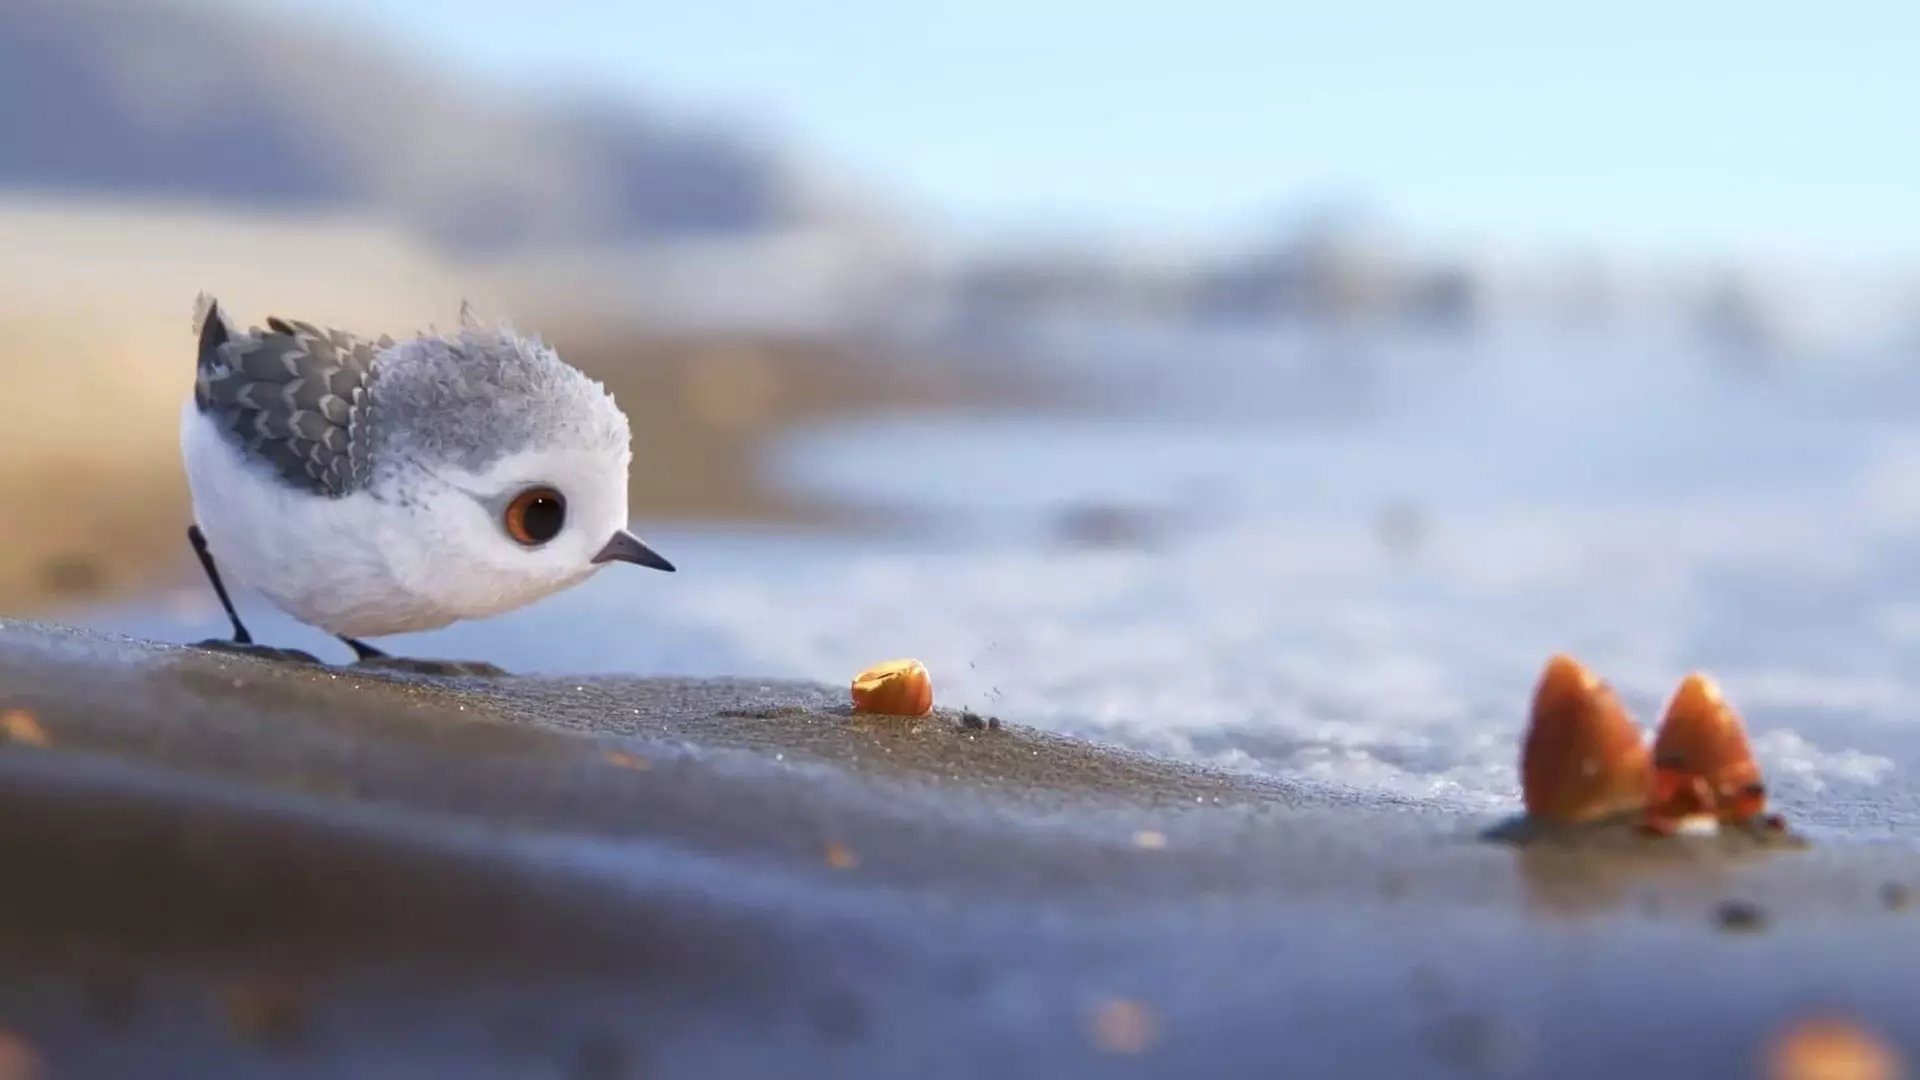 پرنده کوچکی در حال پیدا کردن غذا در انیمیشن کوتاه Piper